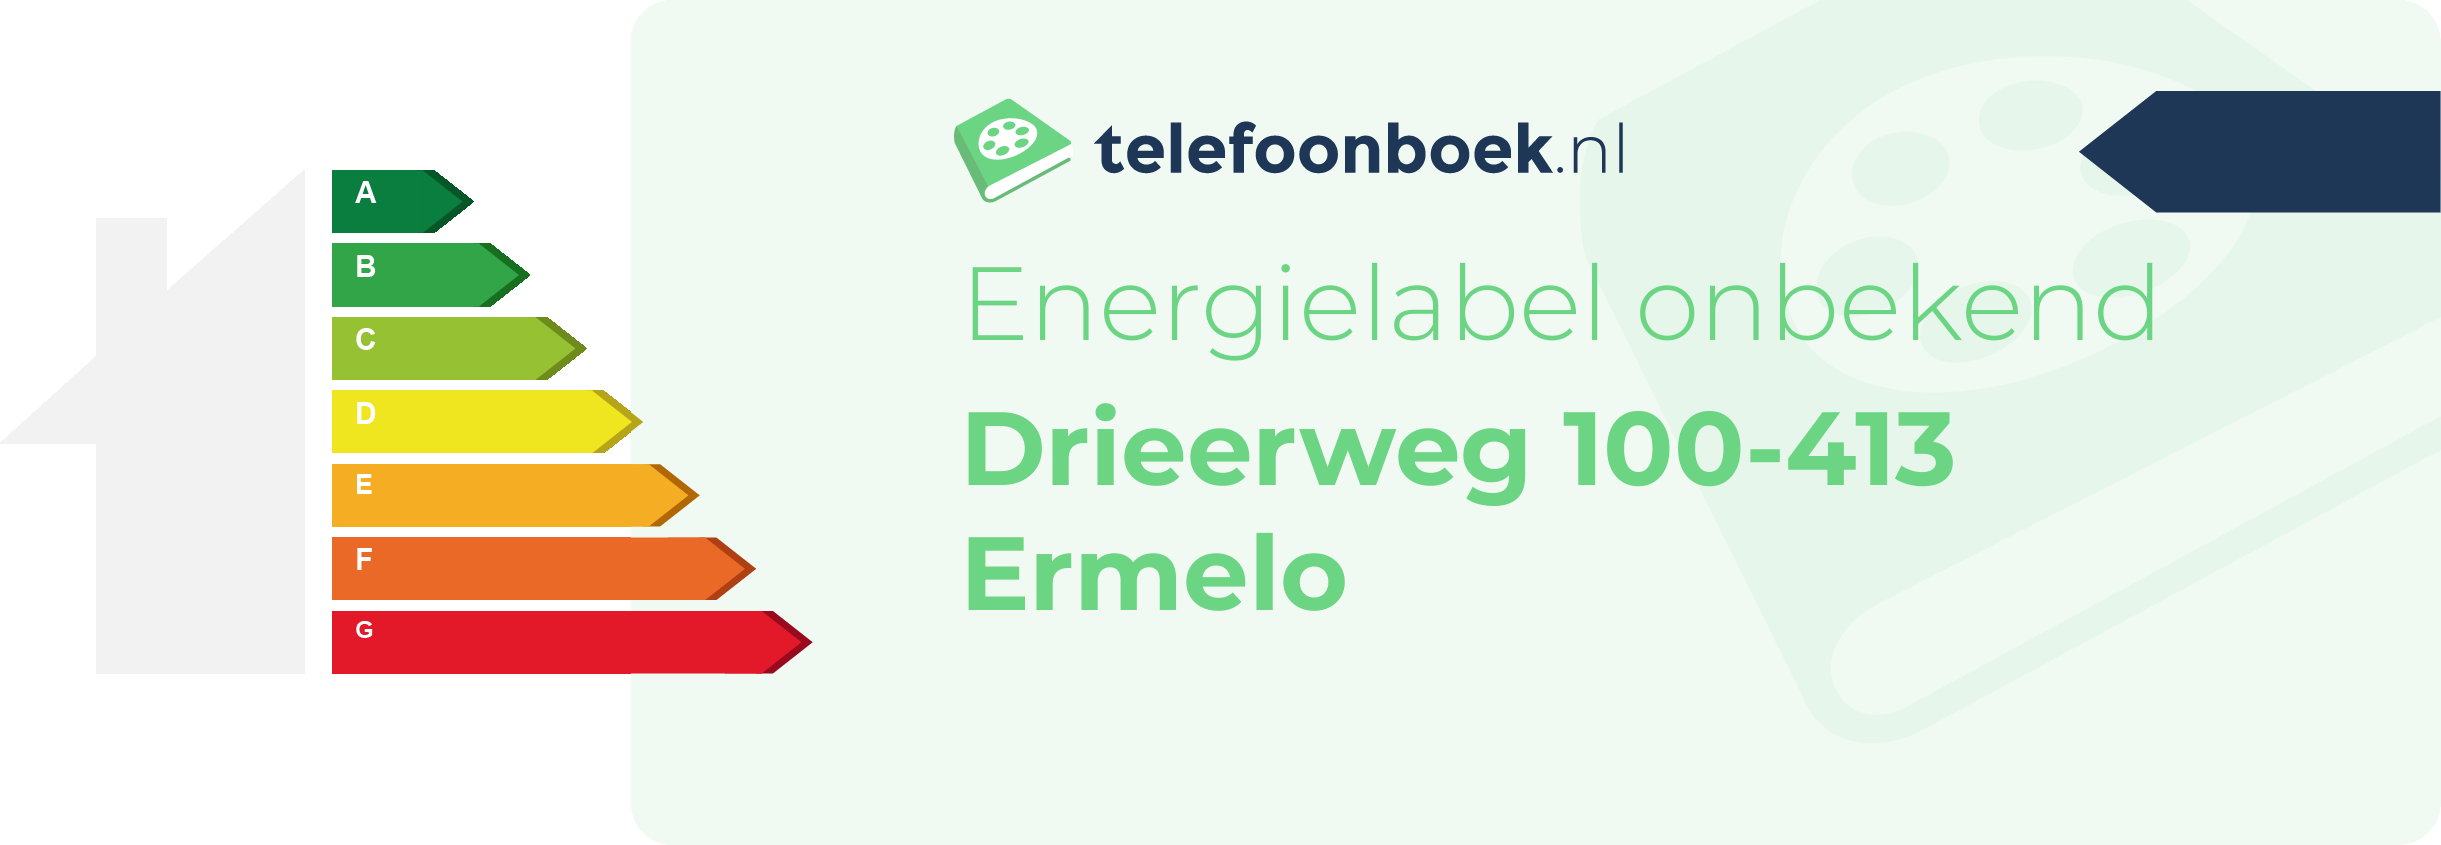 Energielabel Drieerweg 100-413 Ermelo